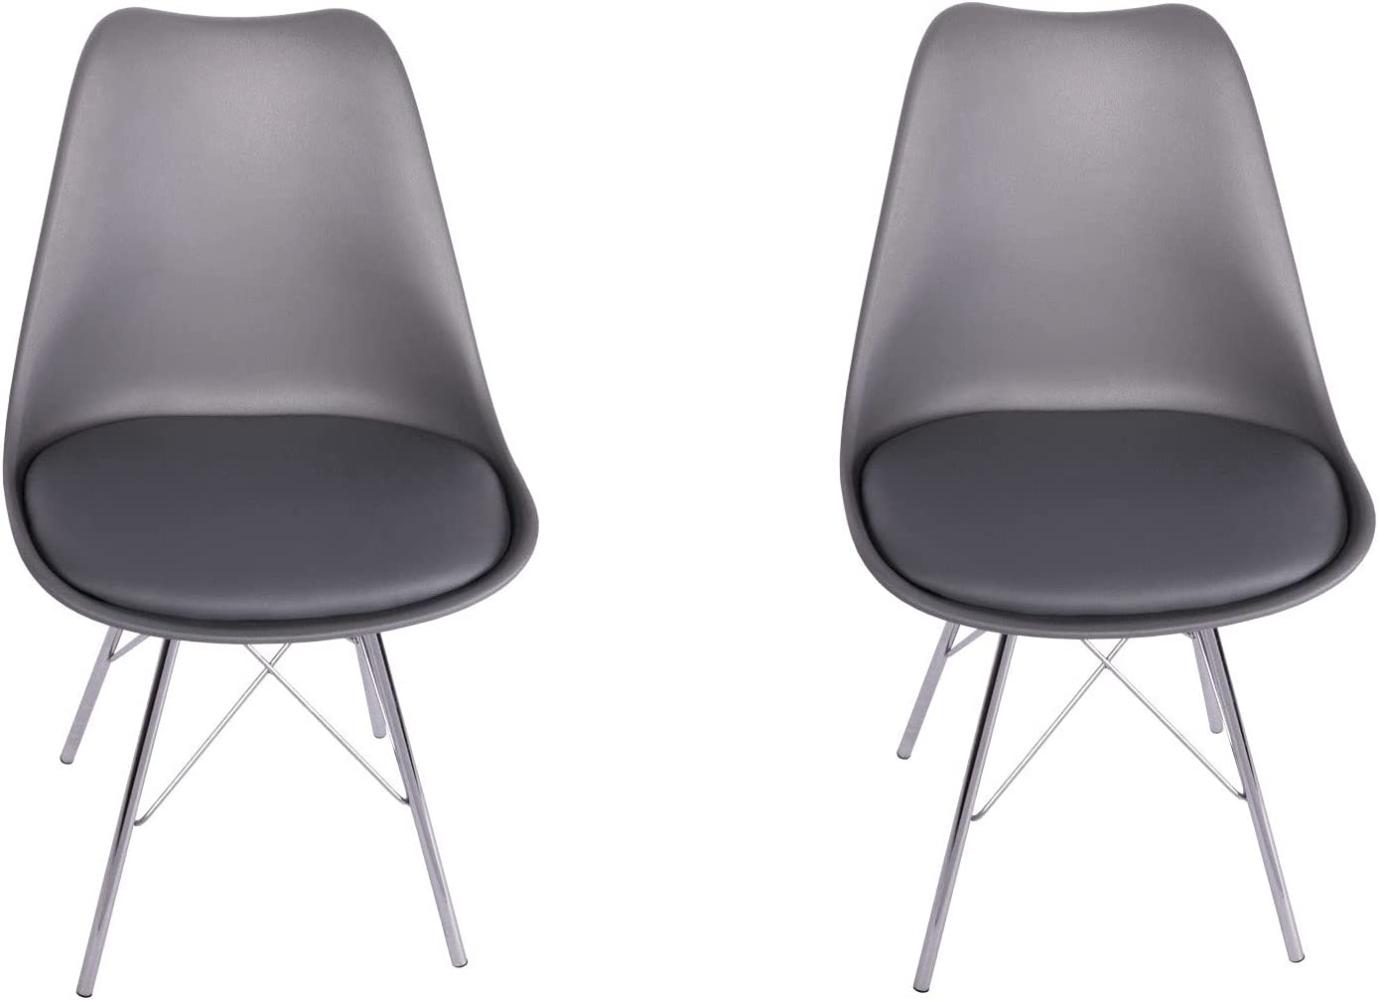 SAM 2er Set Schalenstuhl Lerche, Sitzschale grau, integriertes Kunstleder-Sitzkissen, Stuhl mit Gestell aus Chrom, Esszimmerstuhl im skandinavischen Stil Bild 1